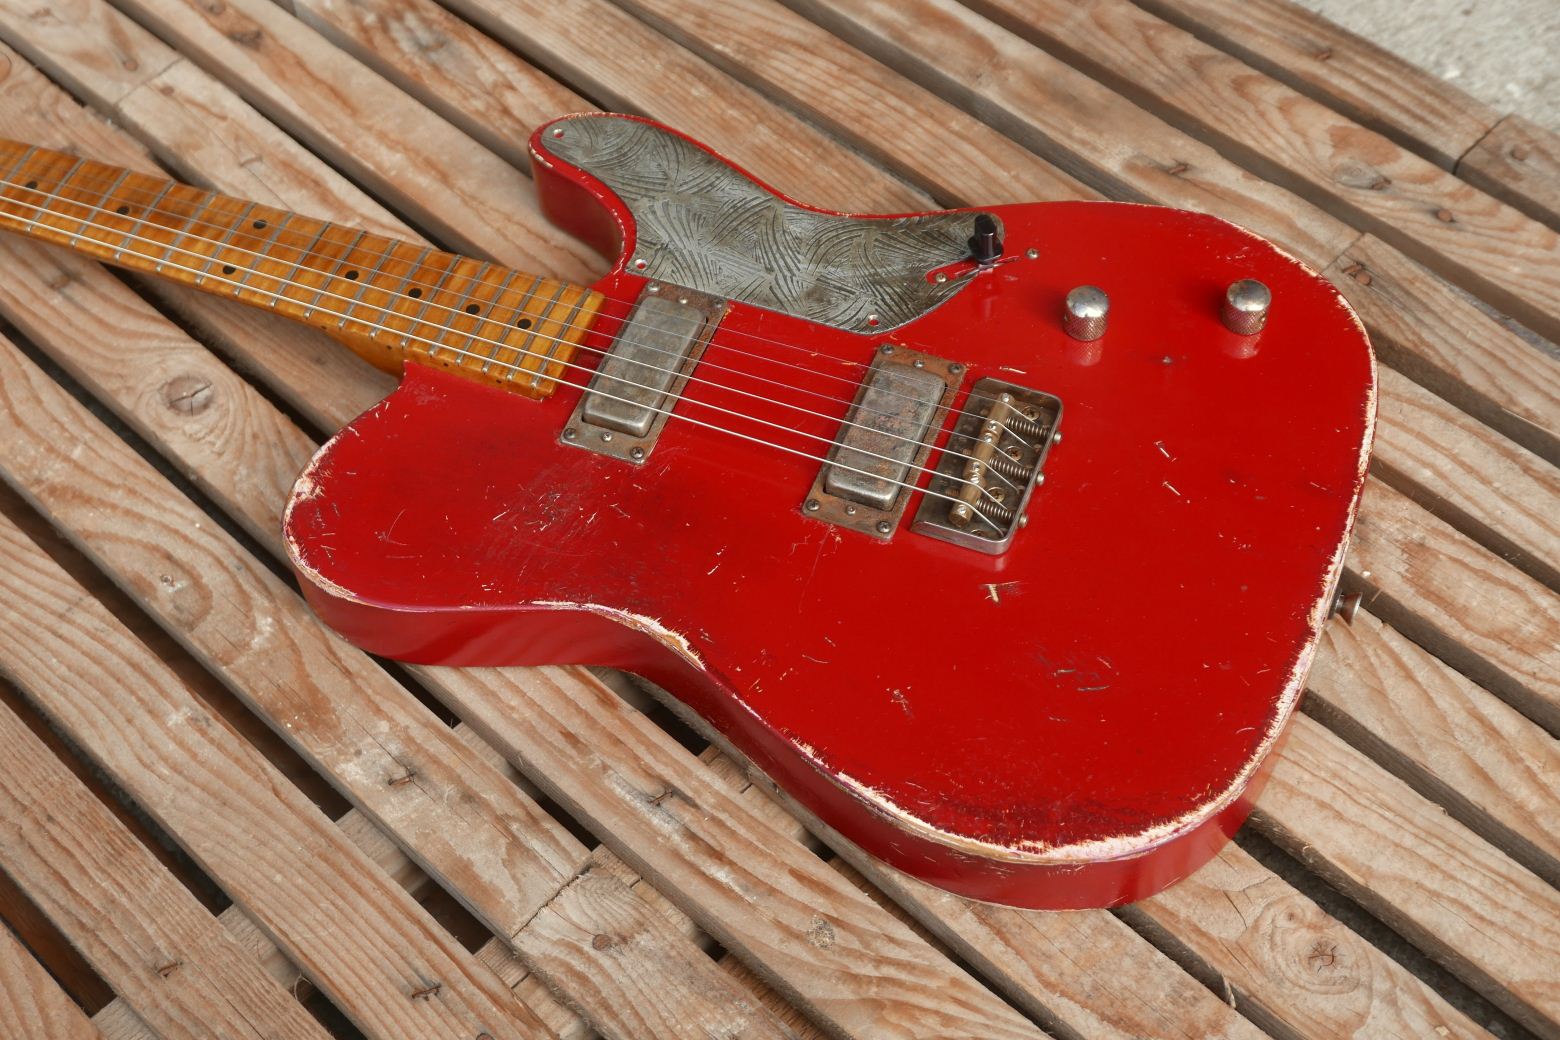 red telecaster guitar body